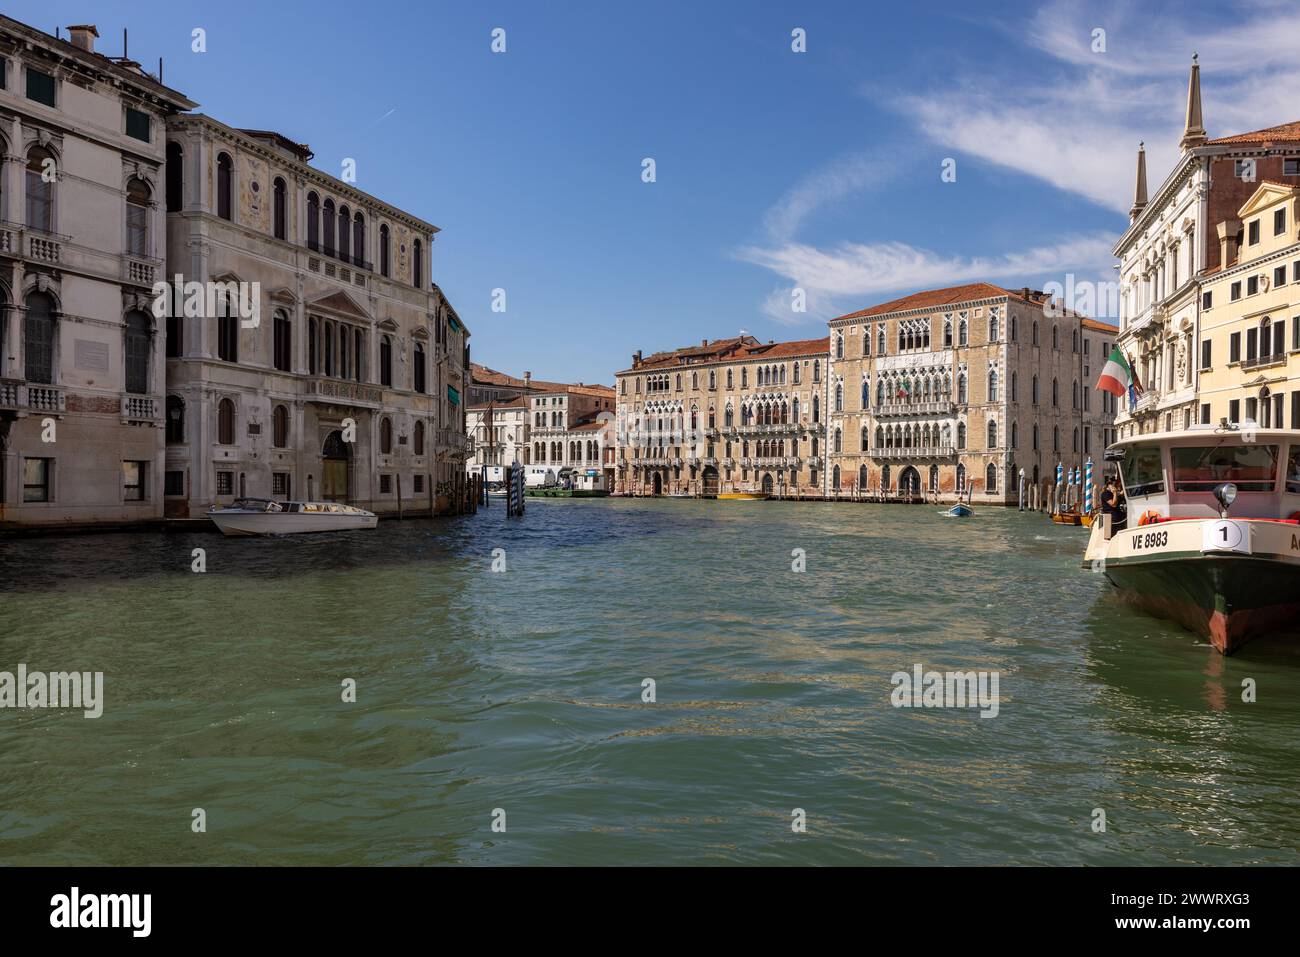 Venise, Italie - 5 septembre 2022 : Palais Ca' Foscari et le palais Giustinien au Grand canal dans le quartier Dorsoduro de Venise, Italie. Banque D'Images